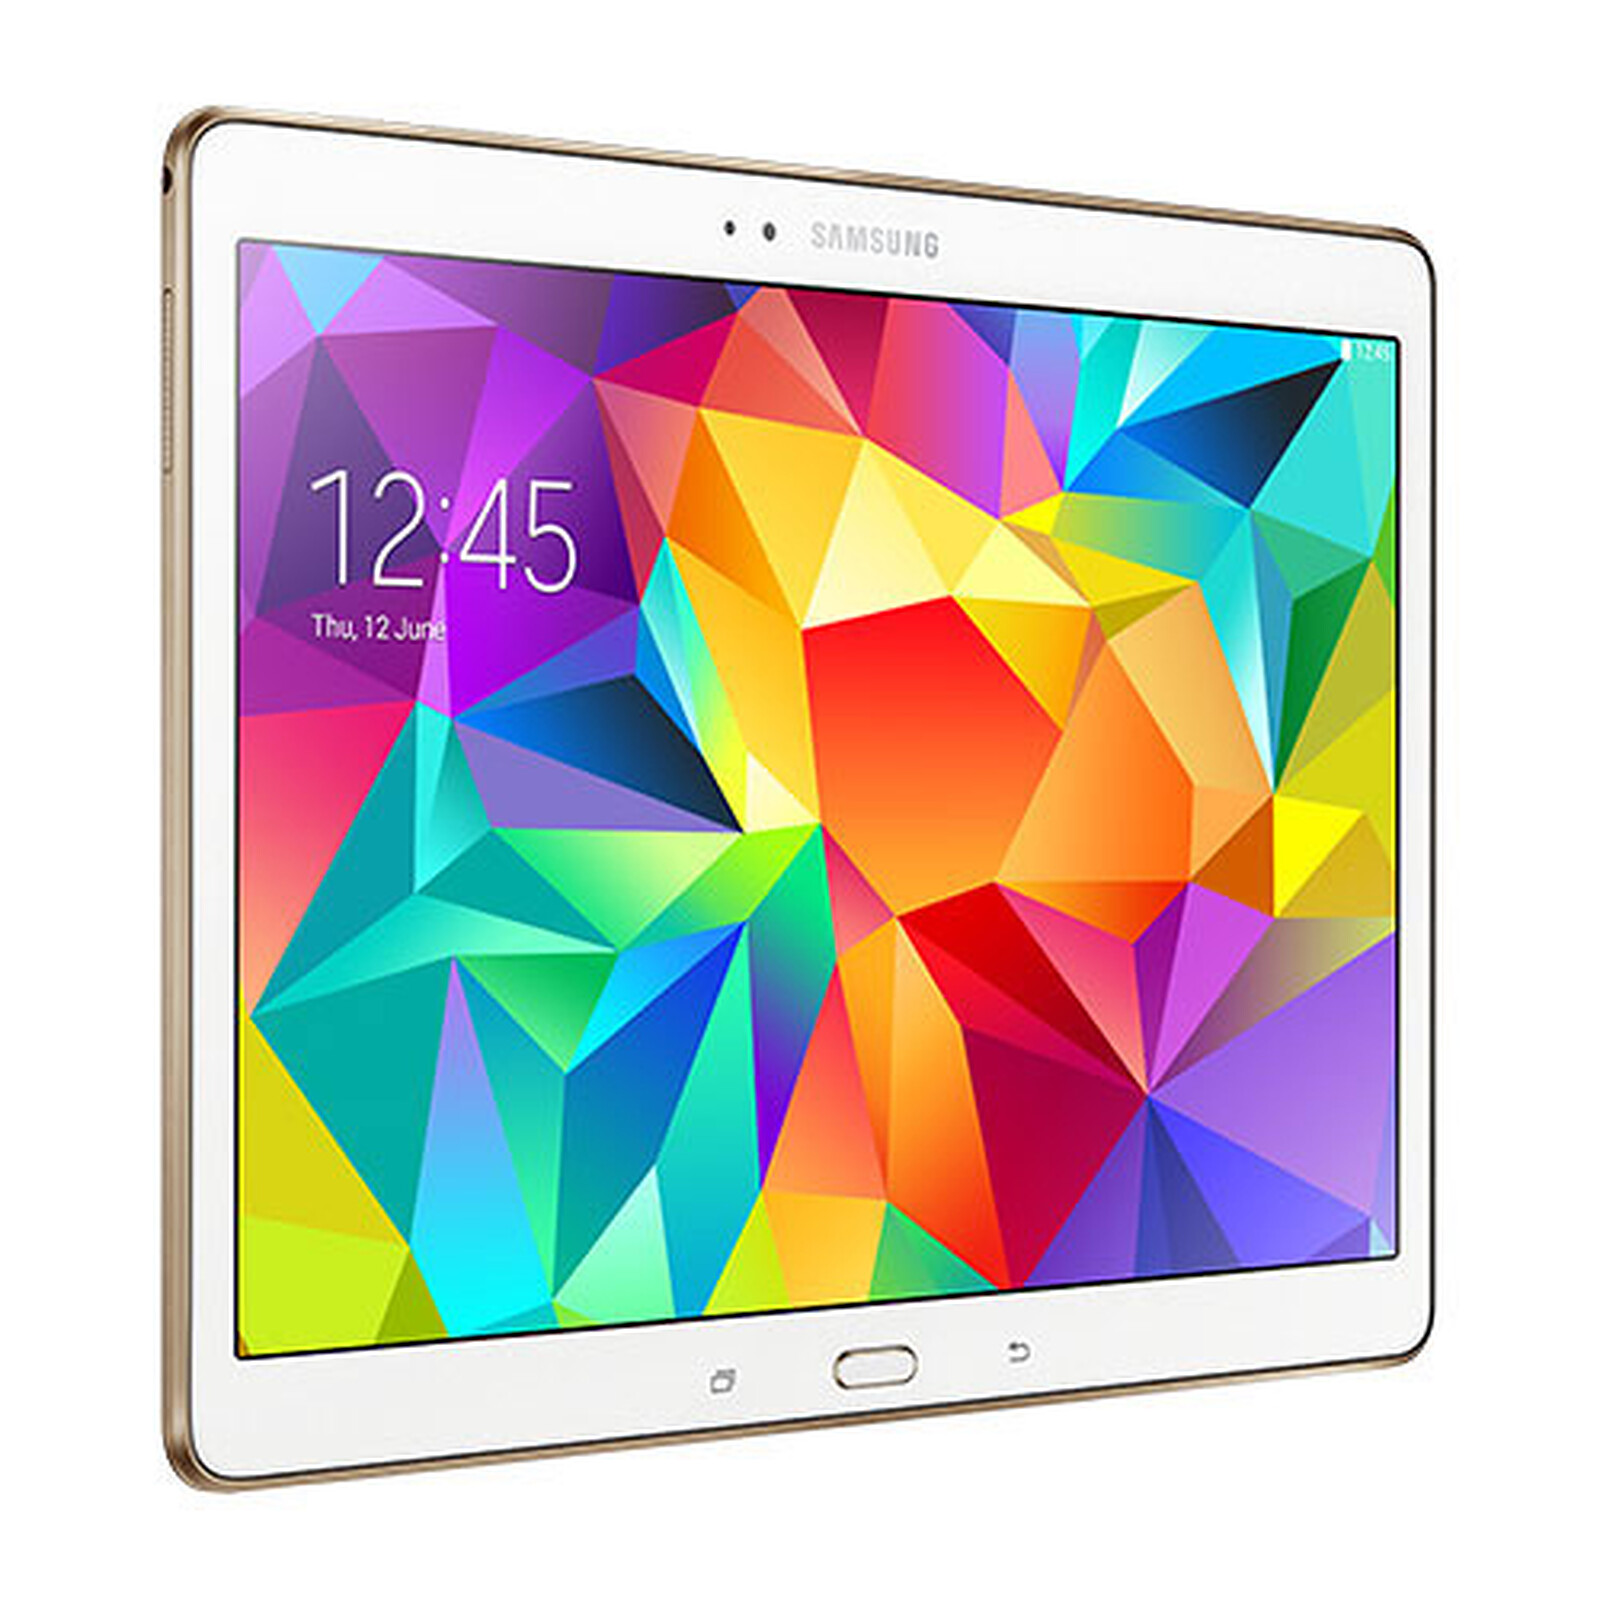 Samsung Galaxy Tab S 10.5 SM-T800 16 Go Blanche - Tablette